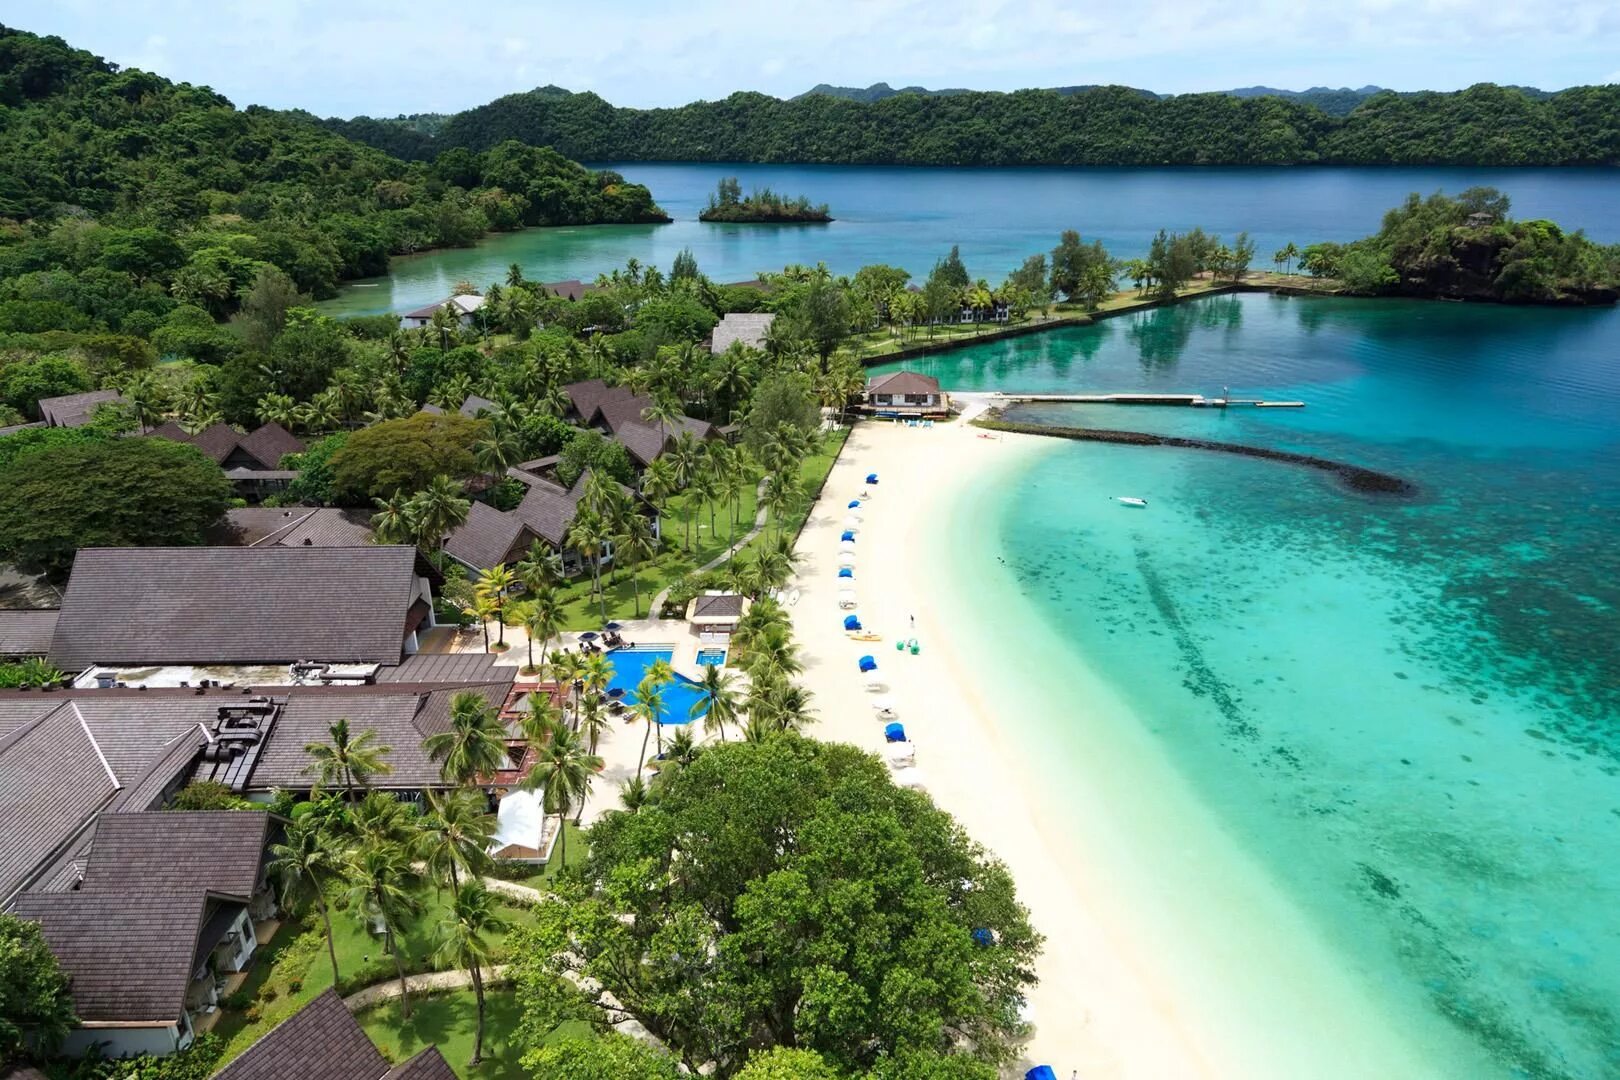 Столица микронезии. Федеративные штаты Микронезии Паликир. Пляжи Палау - Микронезия. Микронезия столица. Palau Pacific Resort.